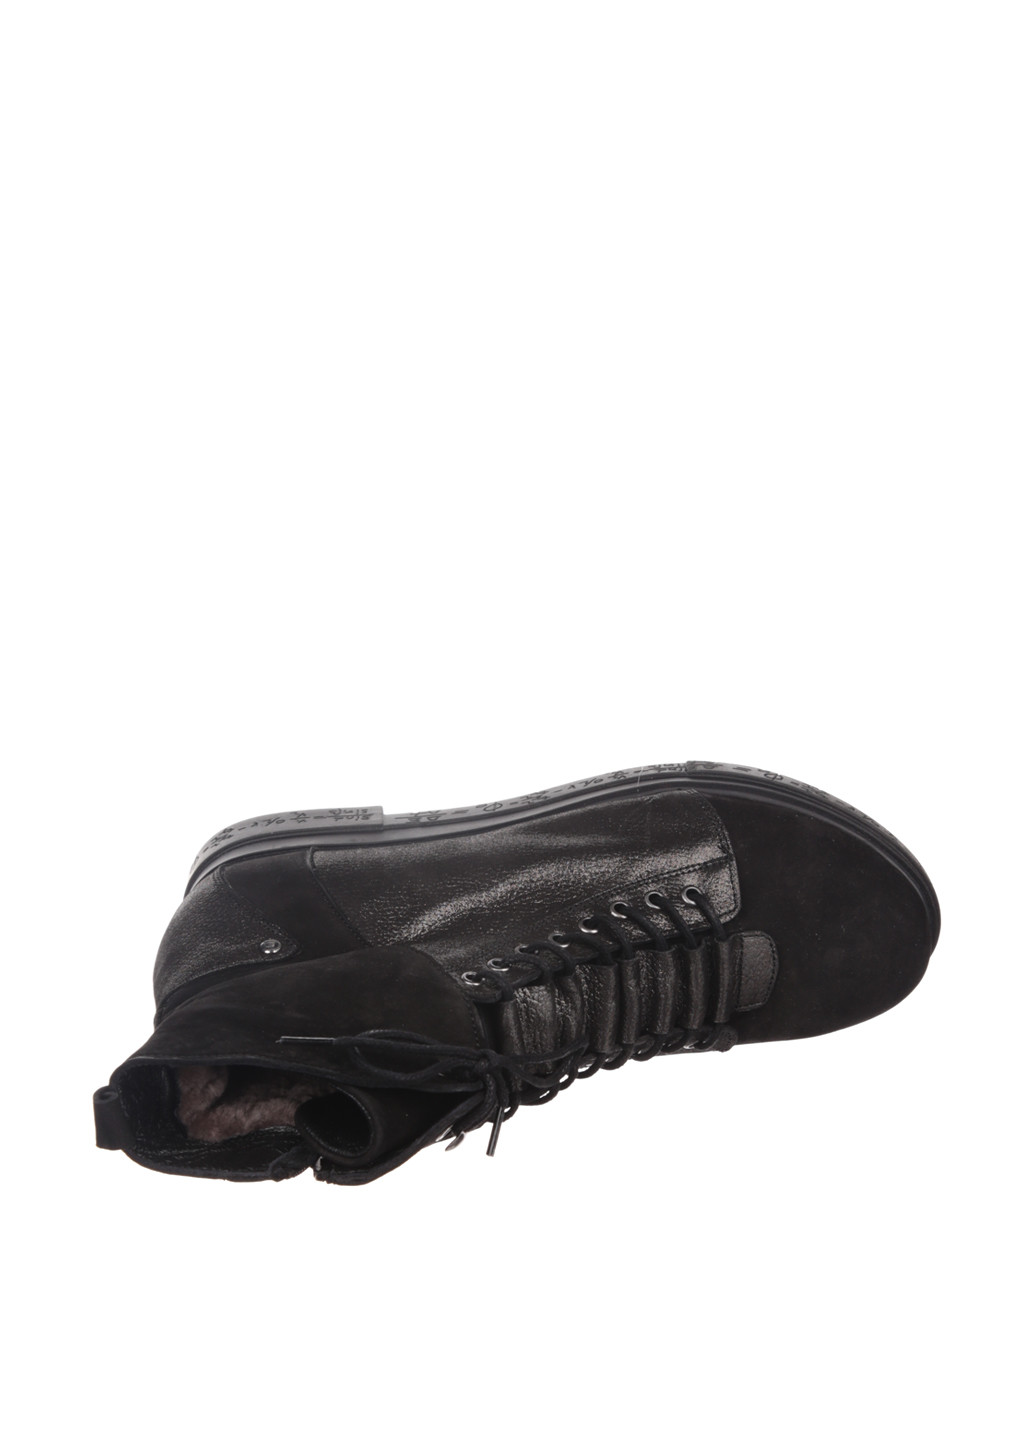 Осенние ботинки Guero со шнуровкой из натуральной замши